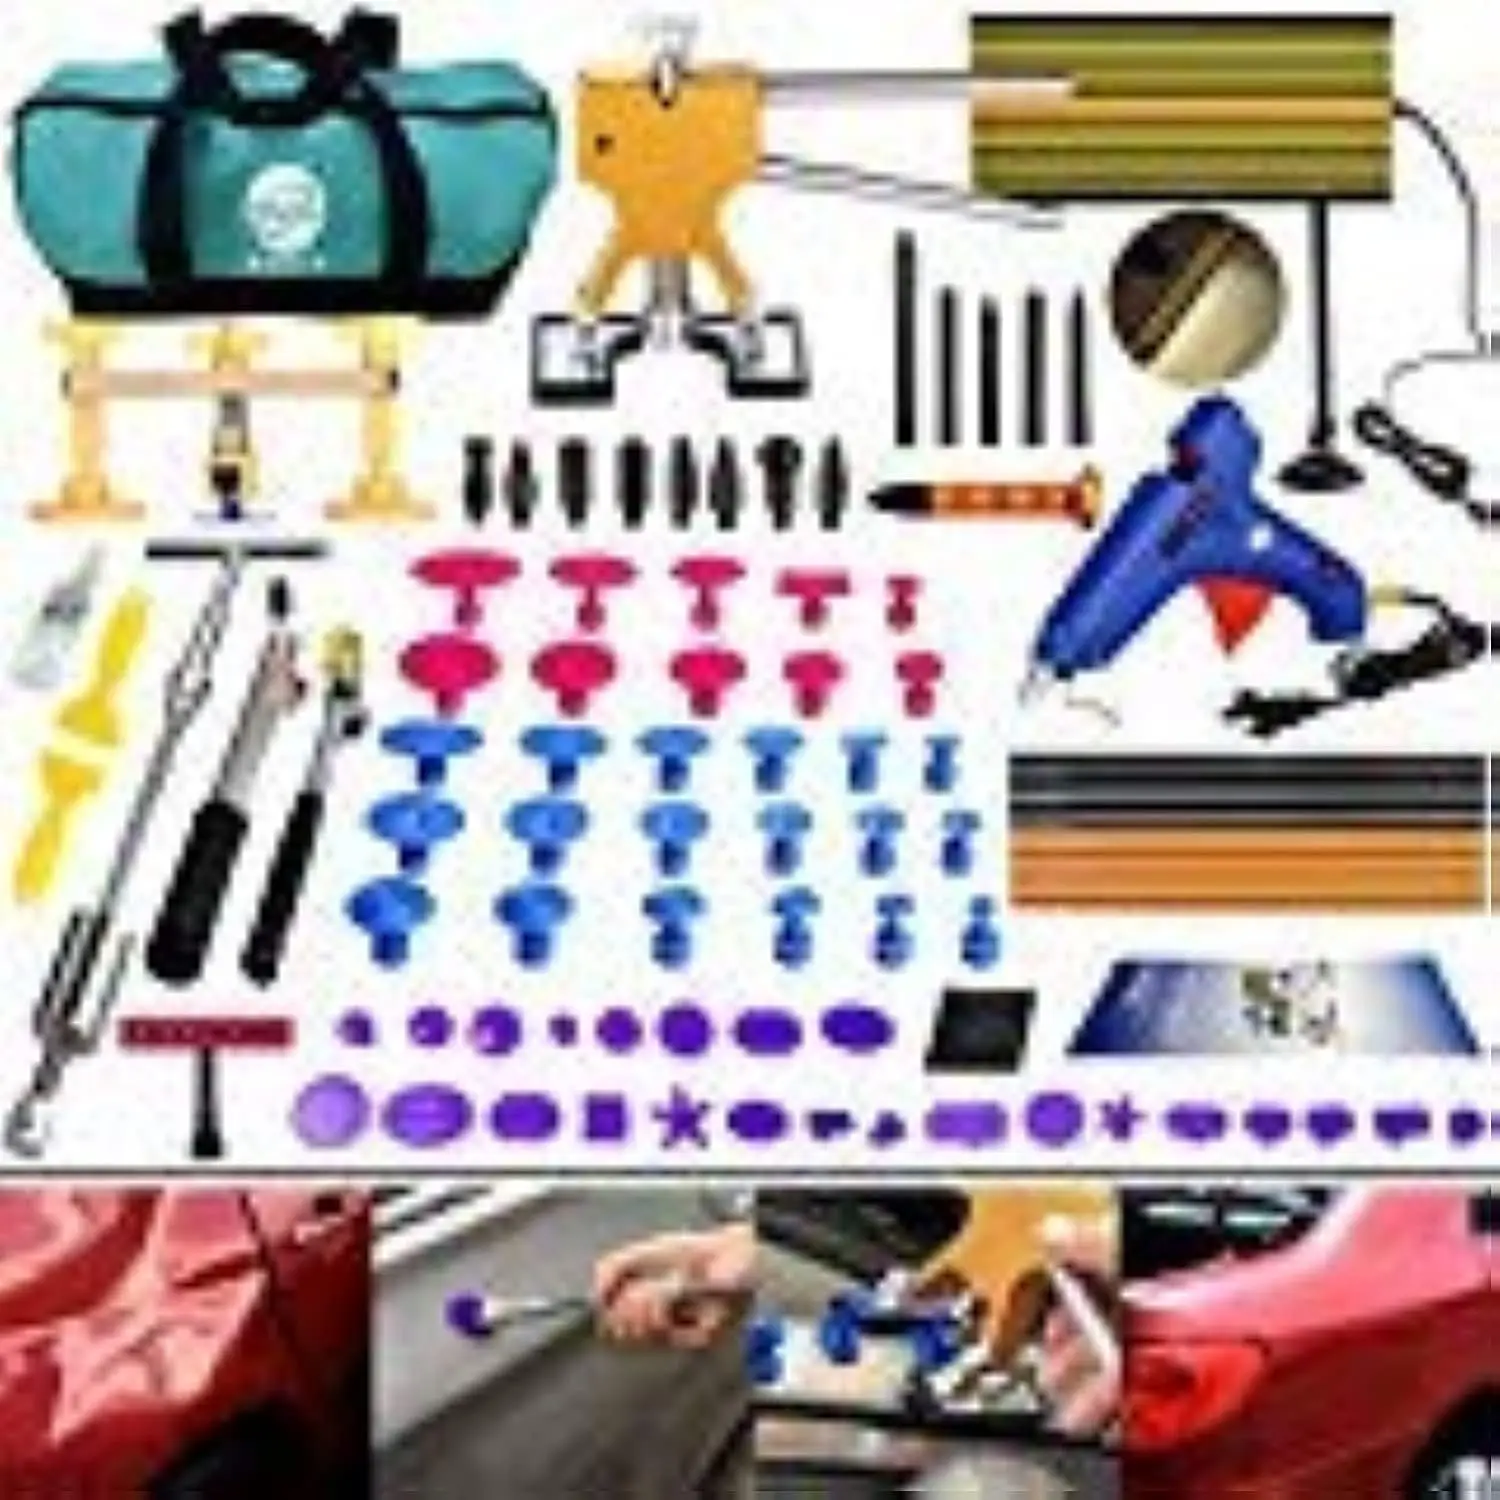 

Paintless Dent Repair Kit - Gliston 89pcs Dent Puller Tools Slide Hammer for Car Hail Damage Dent & Ding Remover